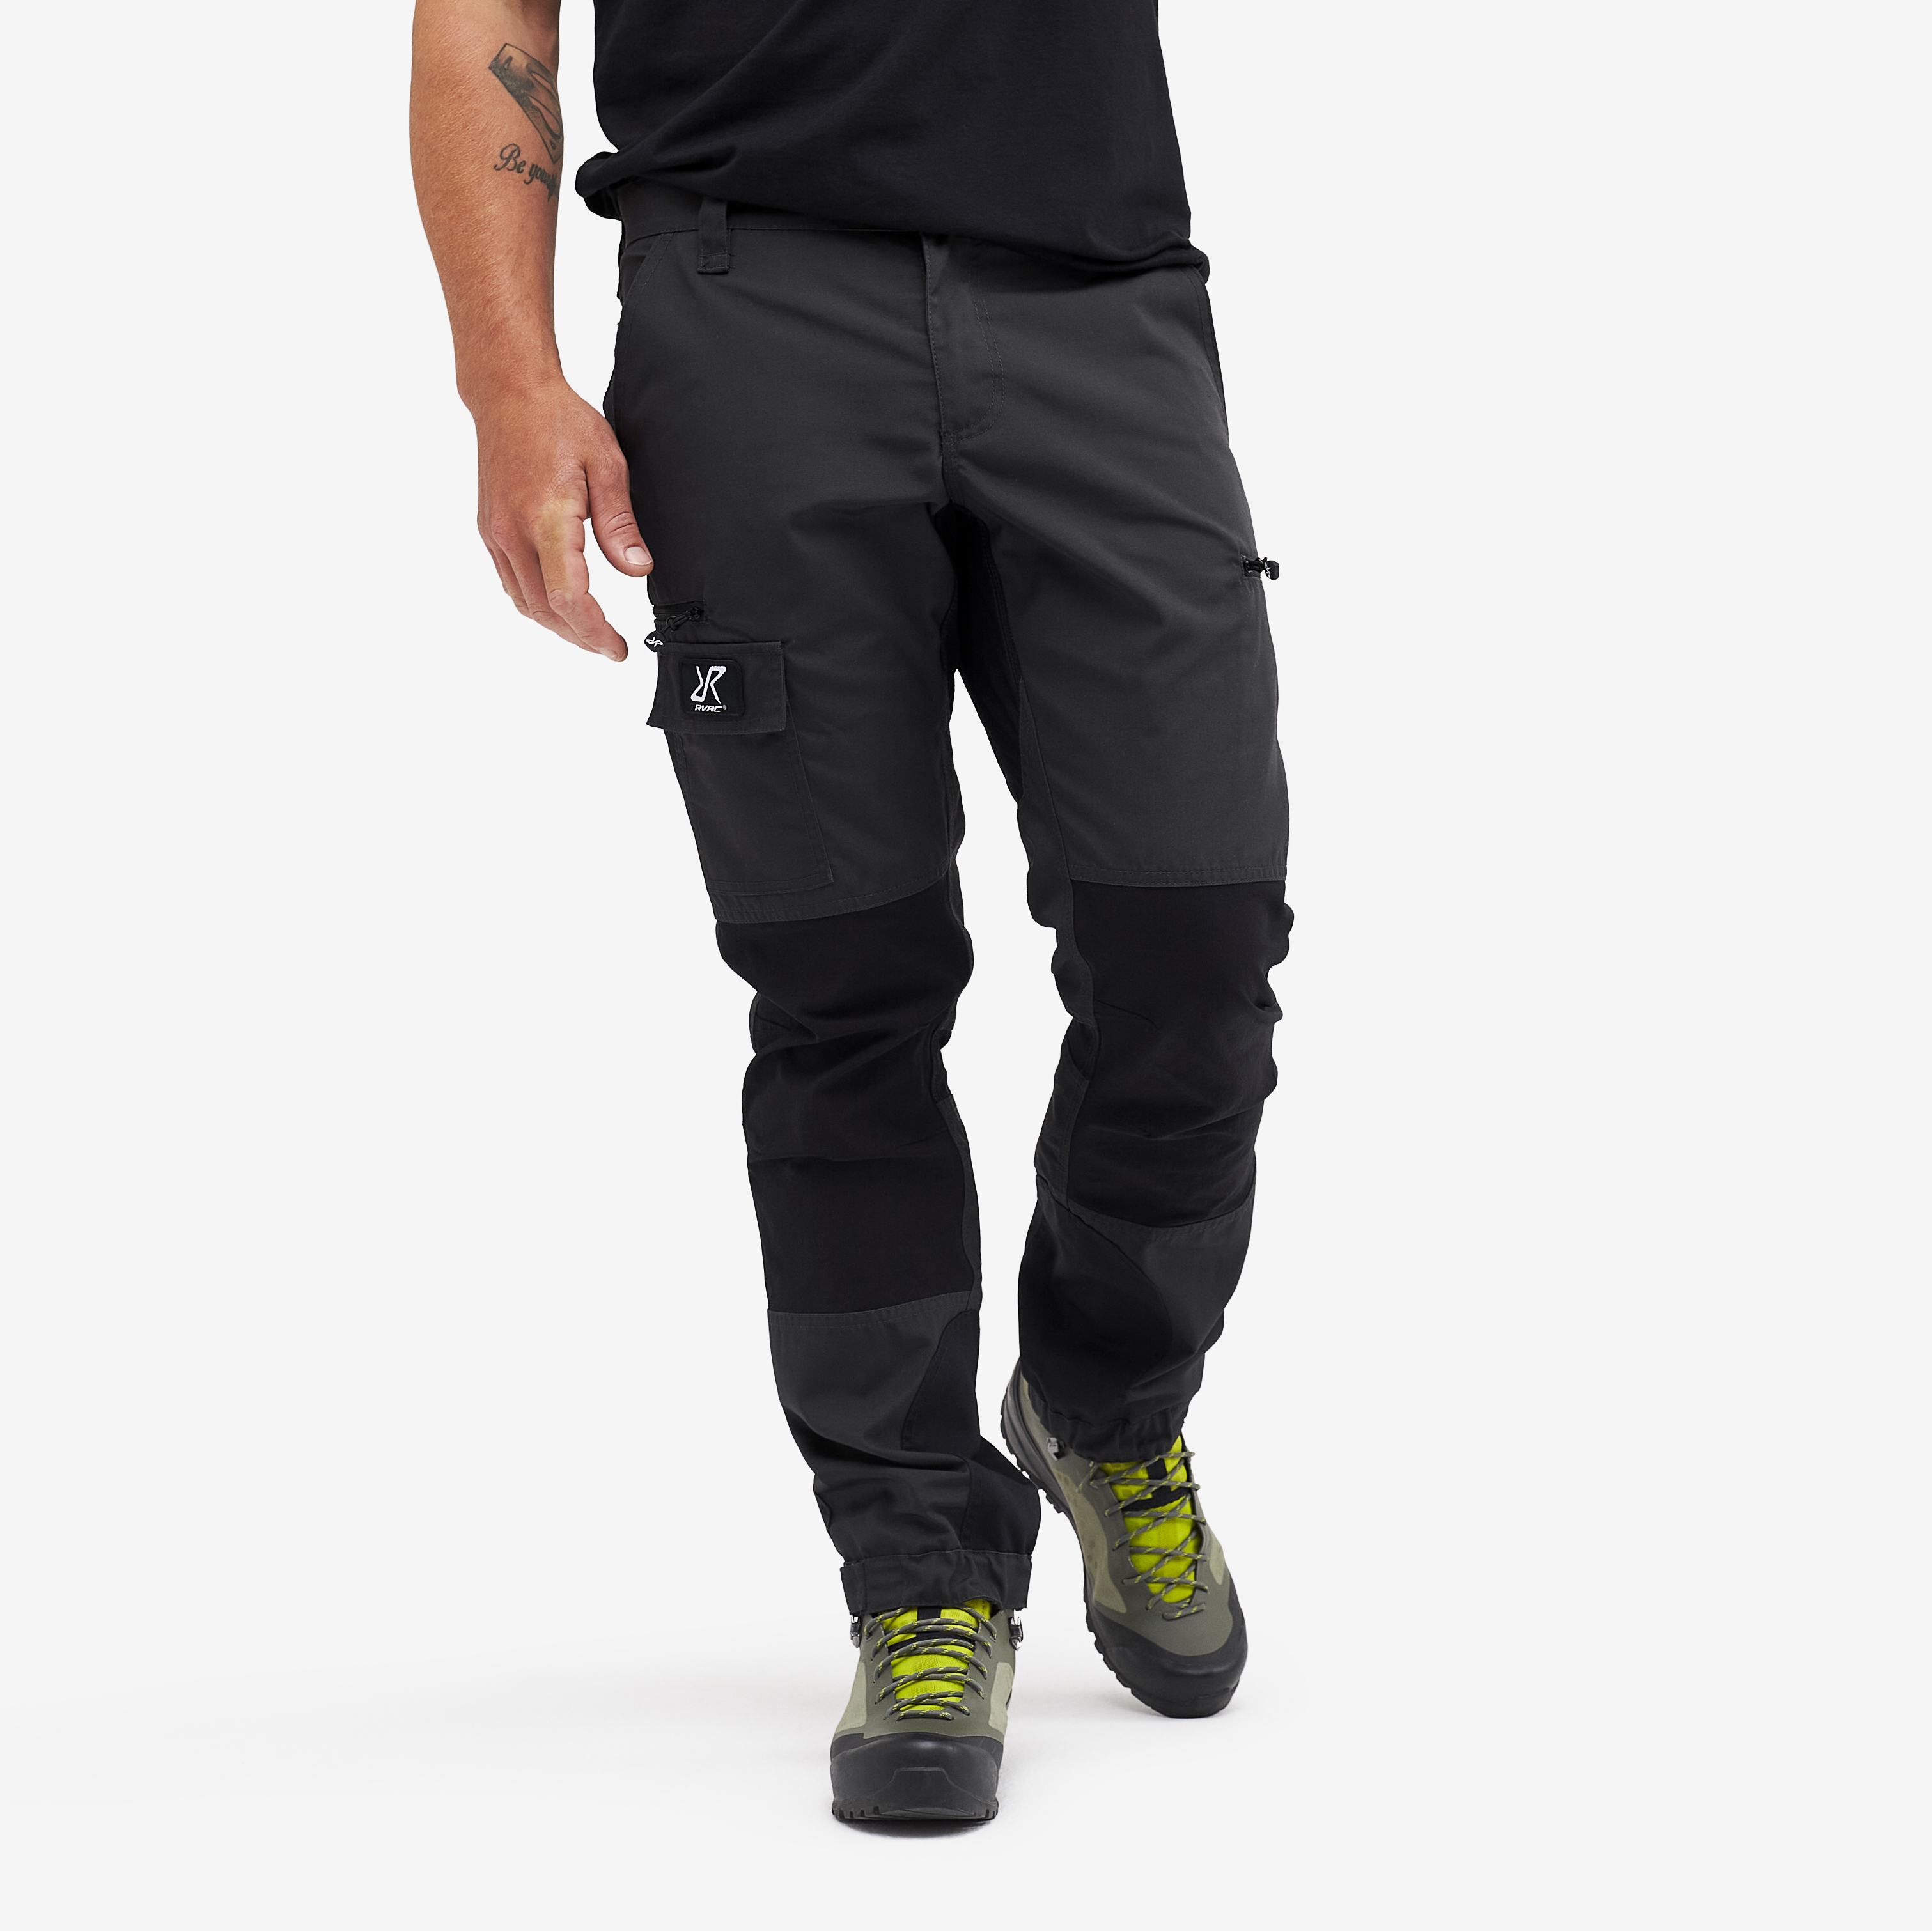 Nordwand Short spodnie outdoorowe męskie ciemno szary